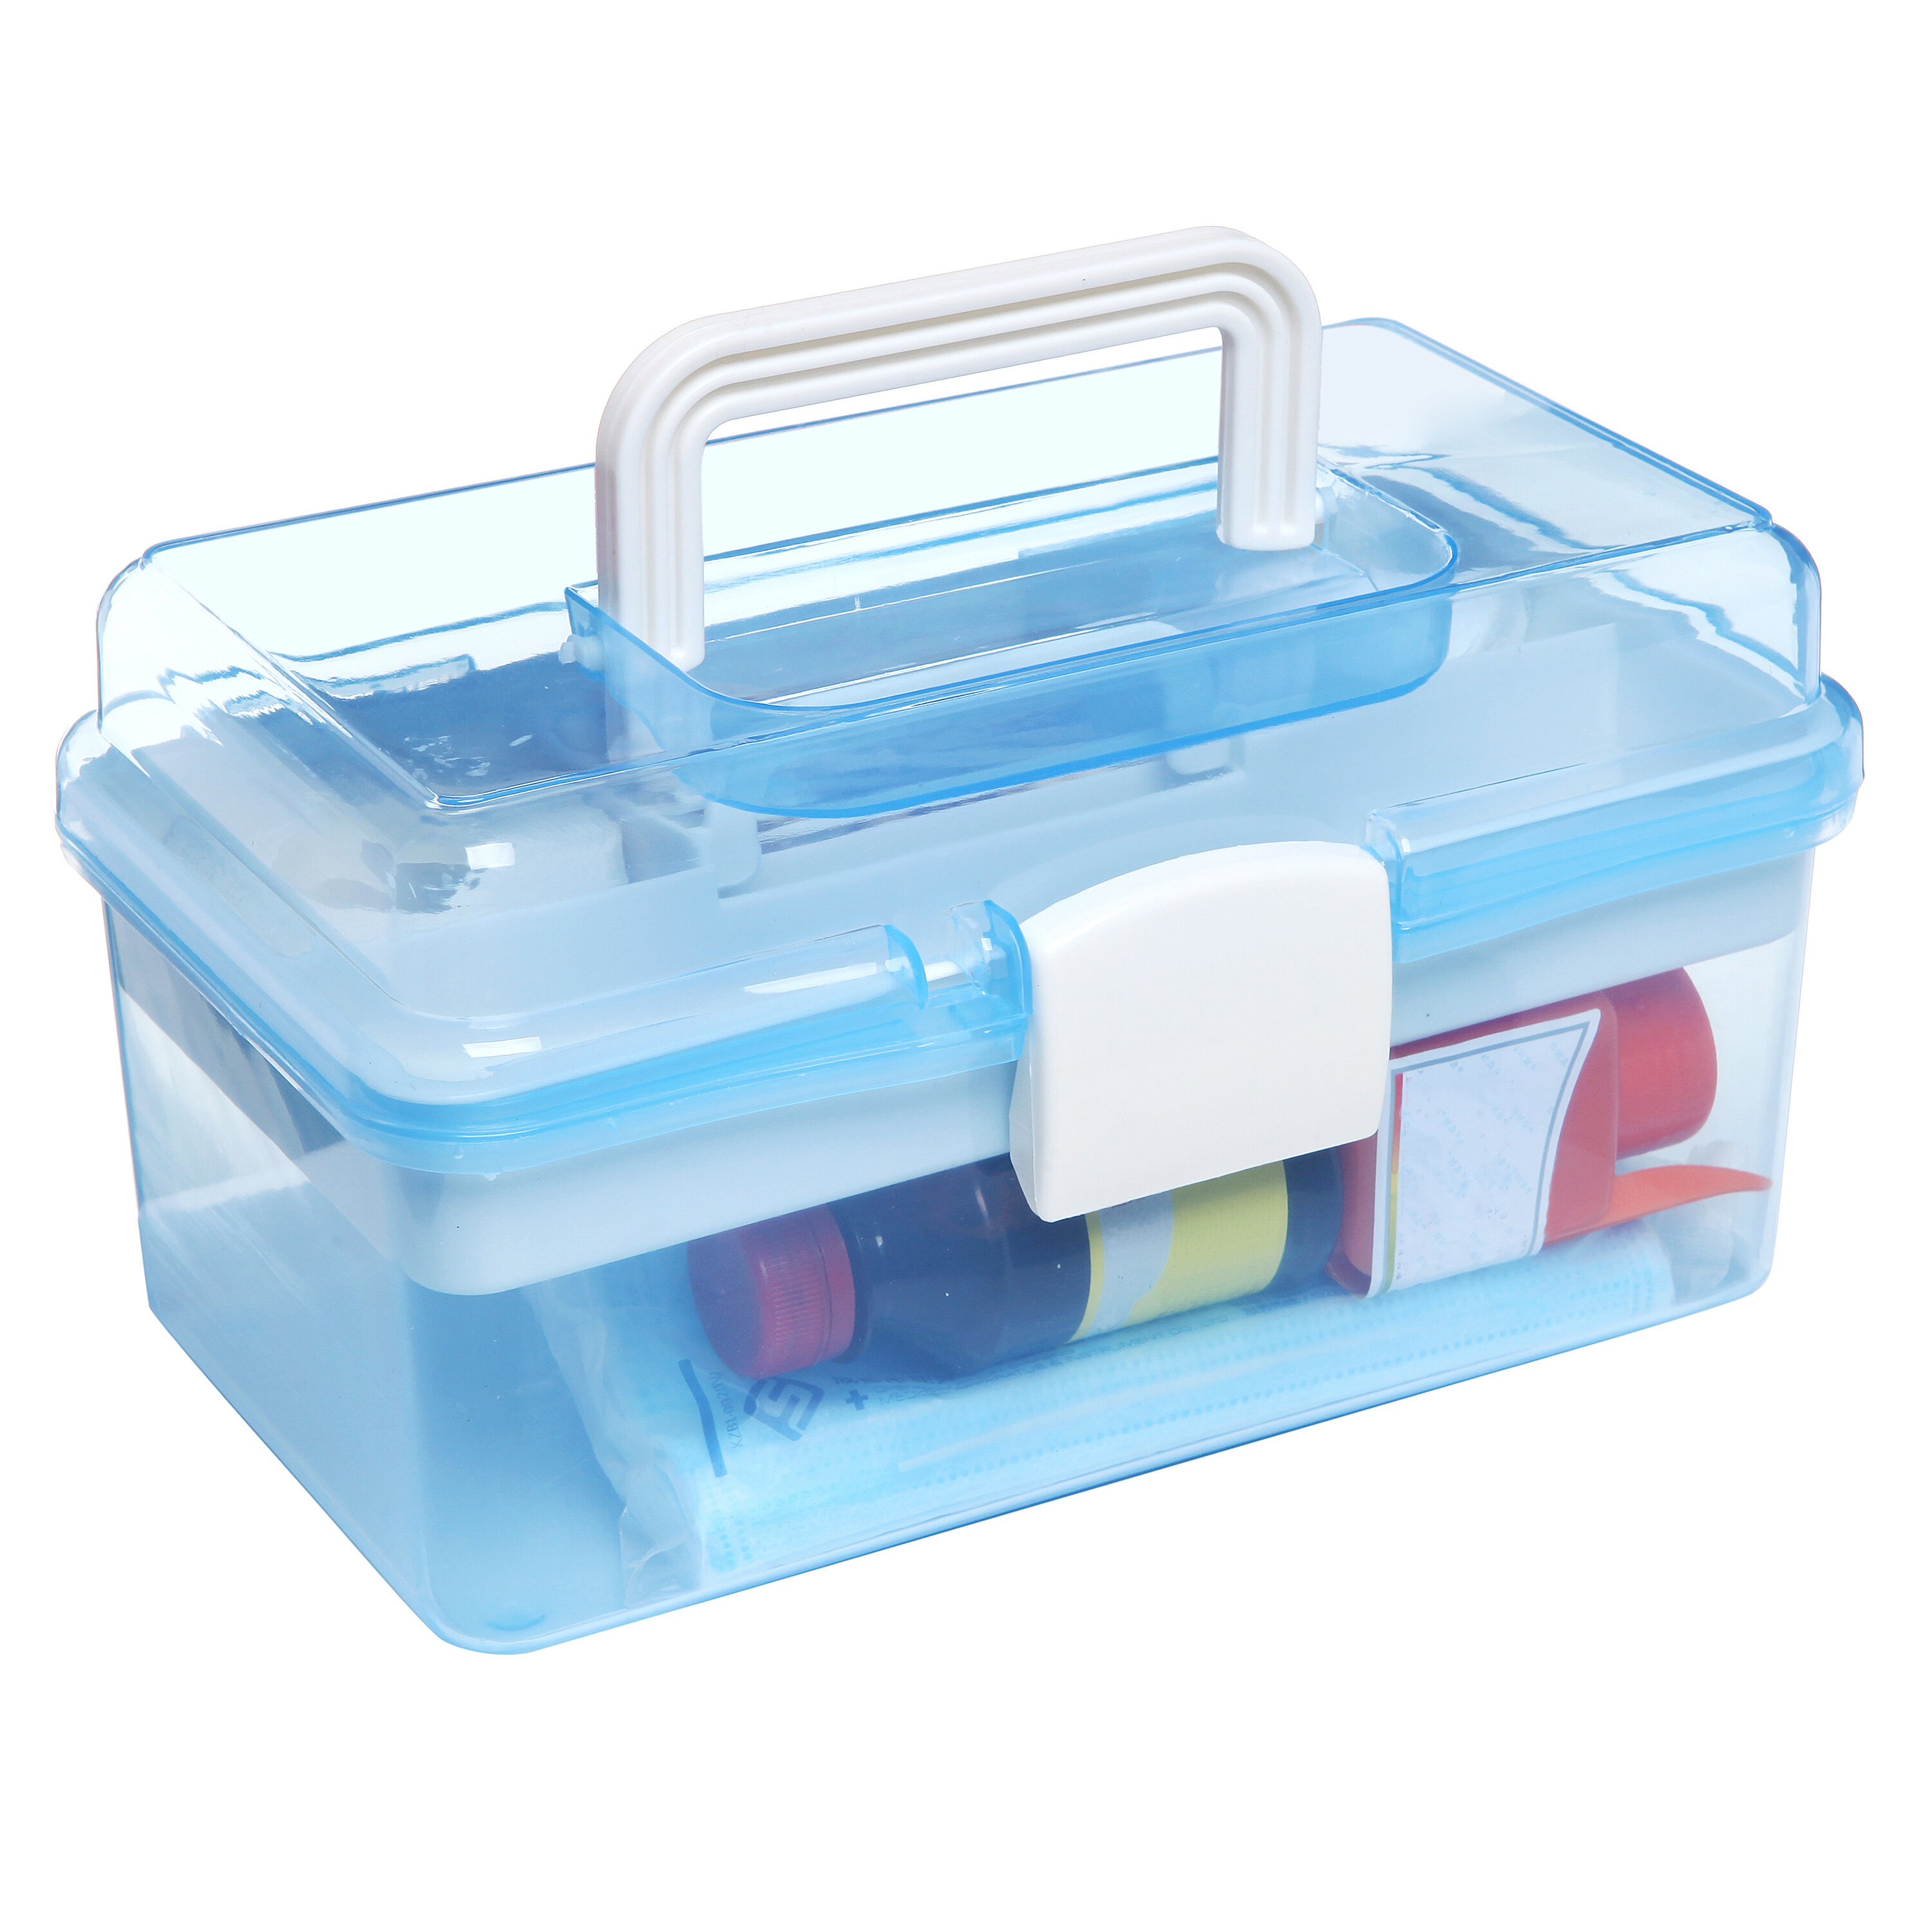 https://assets.wfcdn.com/im/65329945/compr-r85/1350/135013426/first-aid-craft-2-tier-trays-supply-storage-box-plastic-craft-case.jpg